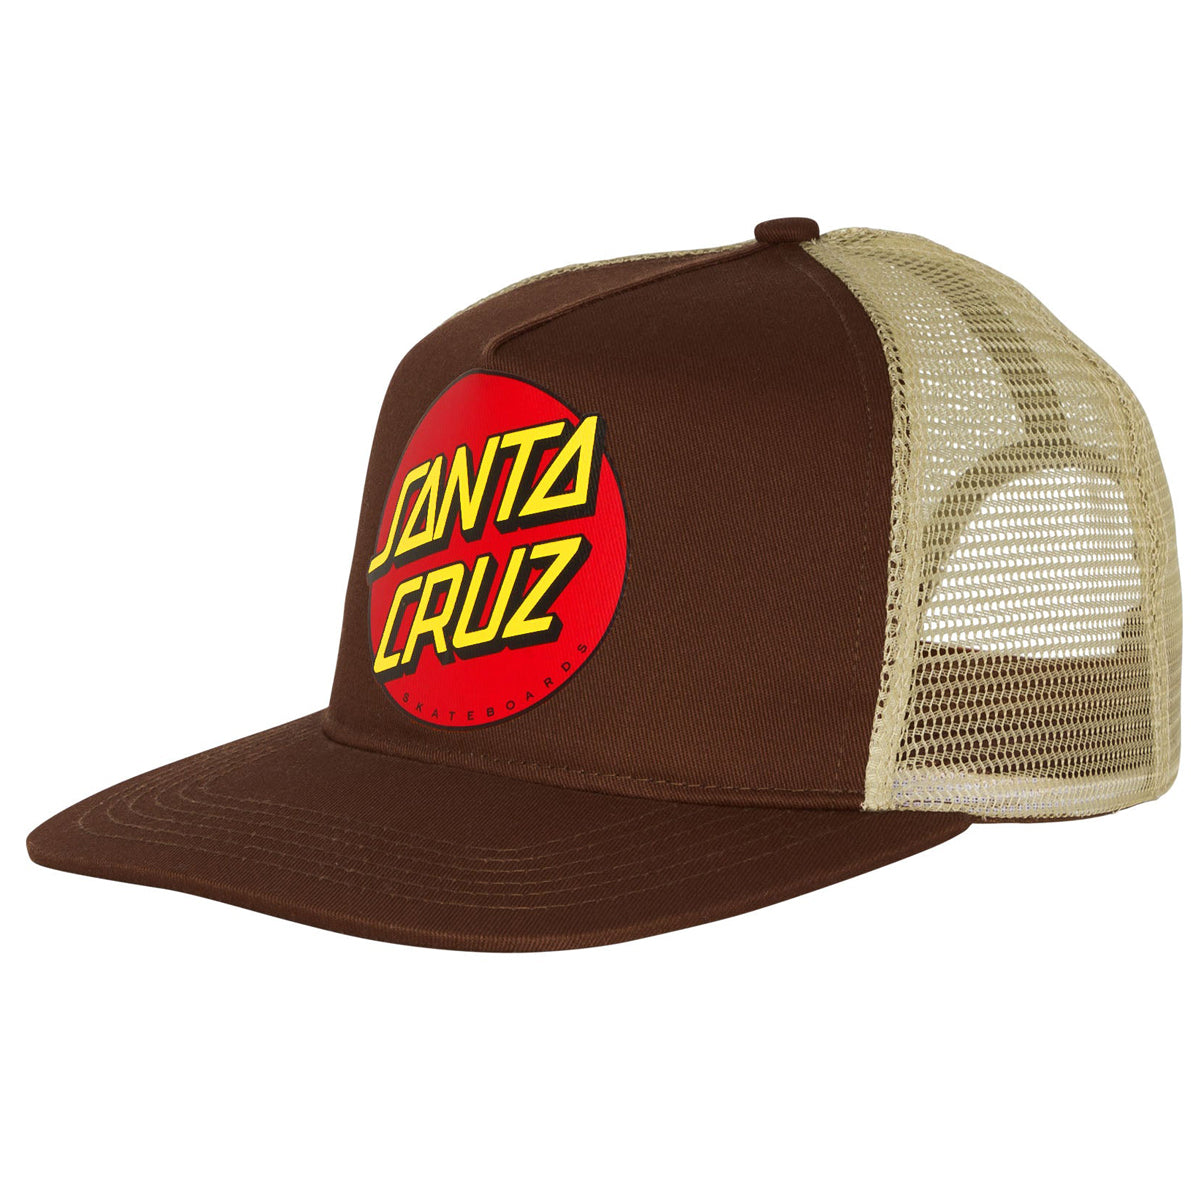 Santa Cruz Classic Dot Mesh Trucker Hat - Tan/Brown image 1